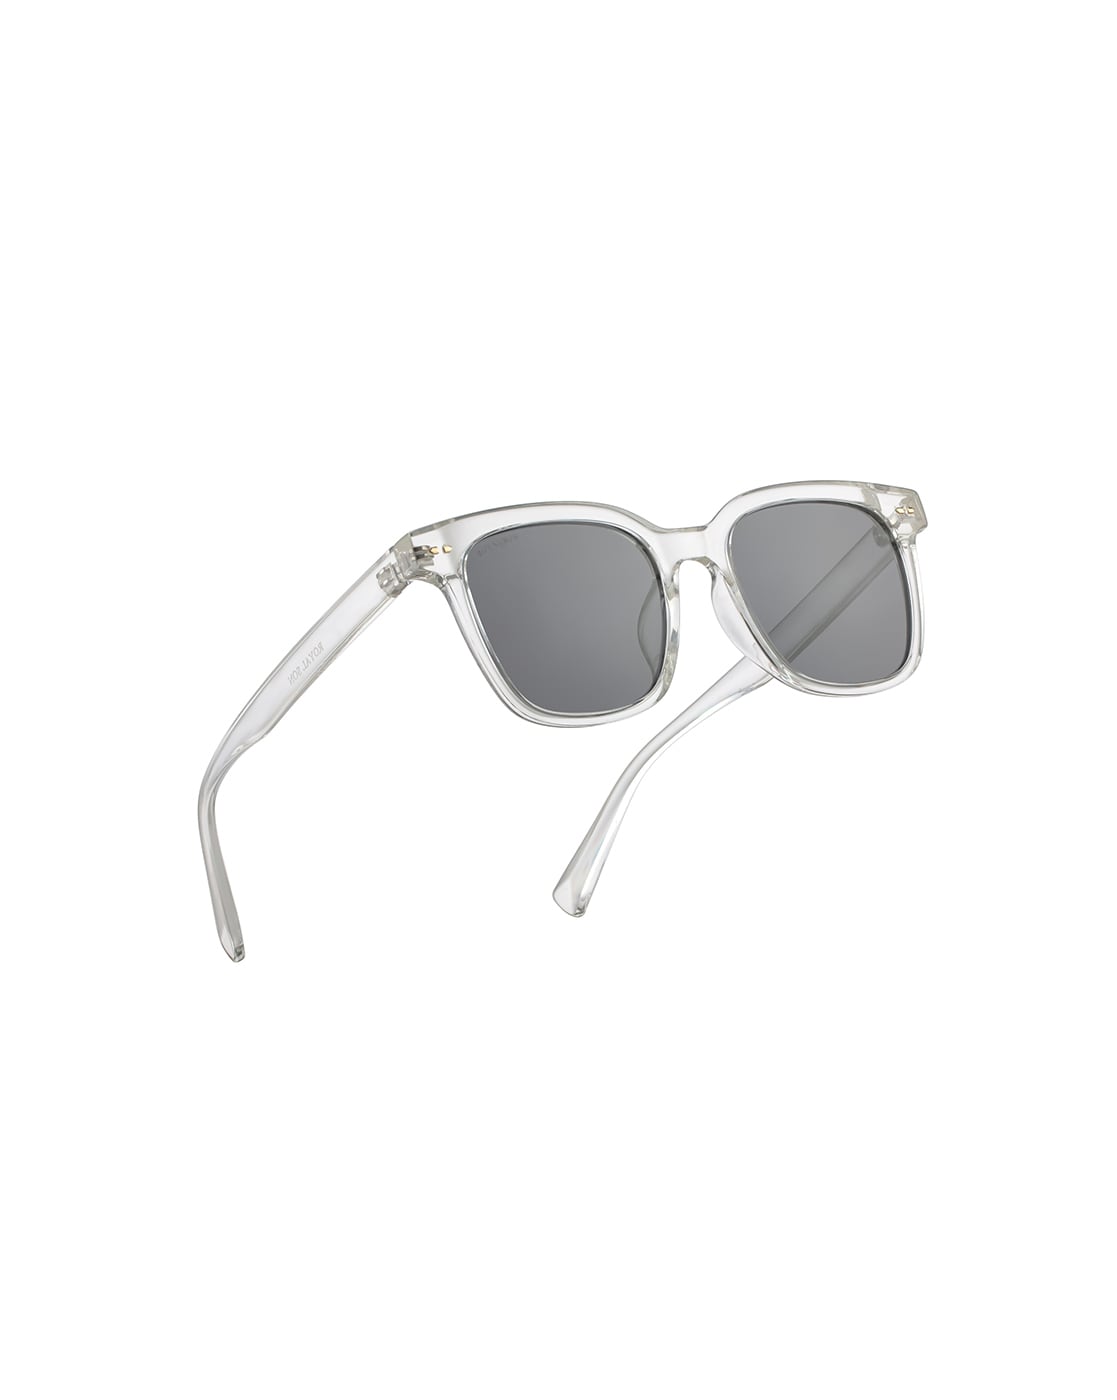 Buy VINCENT CHASE by Lenskart Retro Square Sunglasses Grey For Men & Women  Online @ Best Prices in India | Flipkart.com